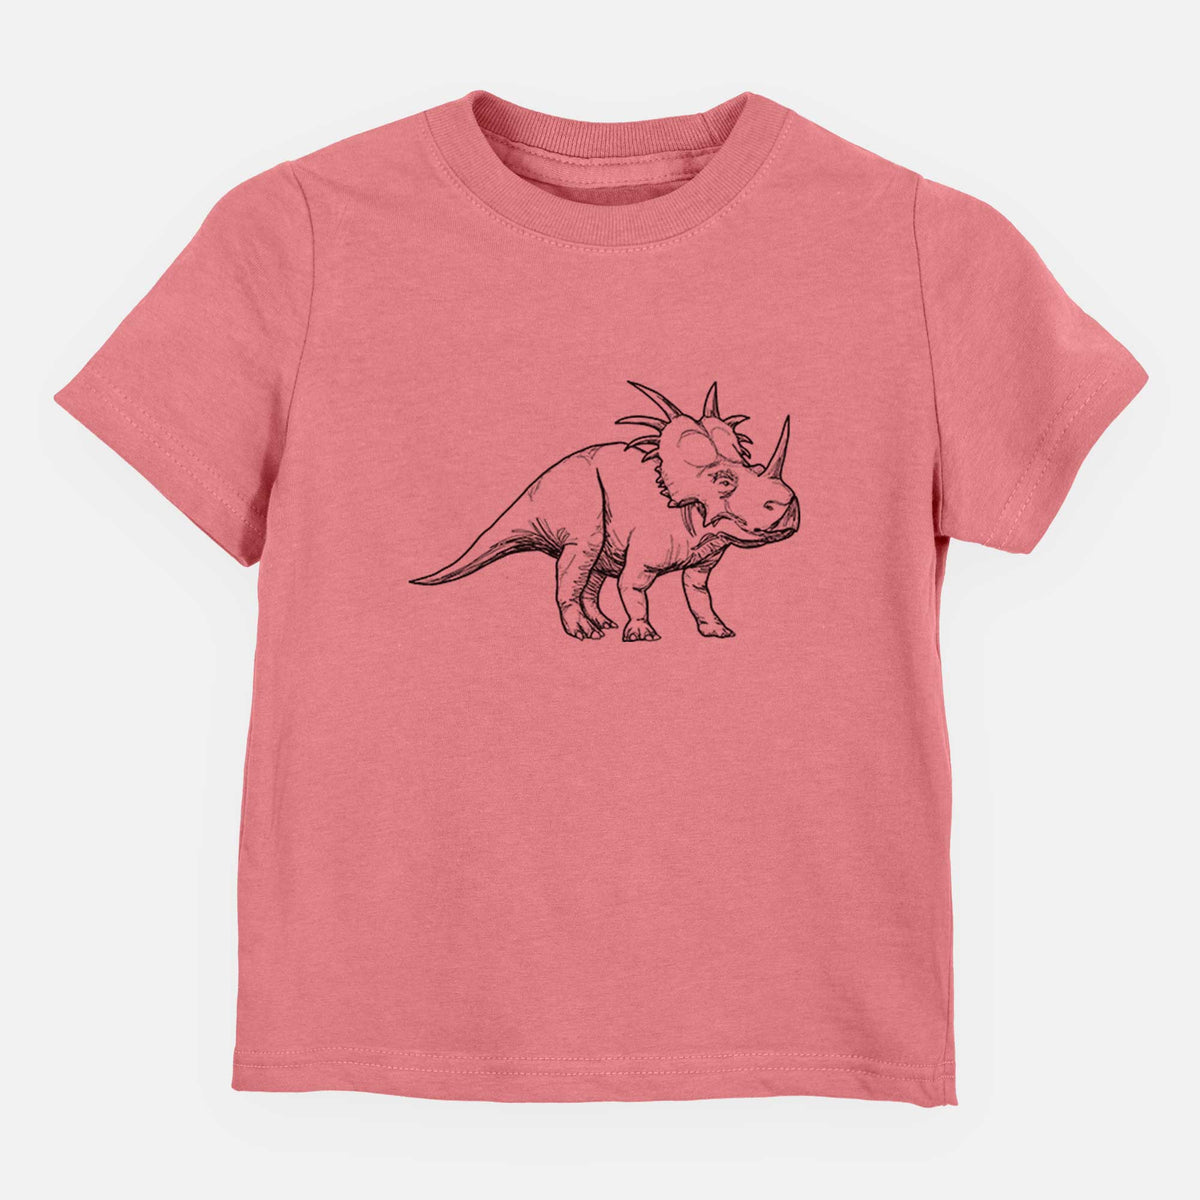 Styracosaurus Albertensis - Kids Shirt